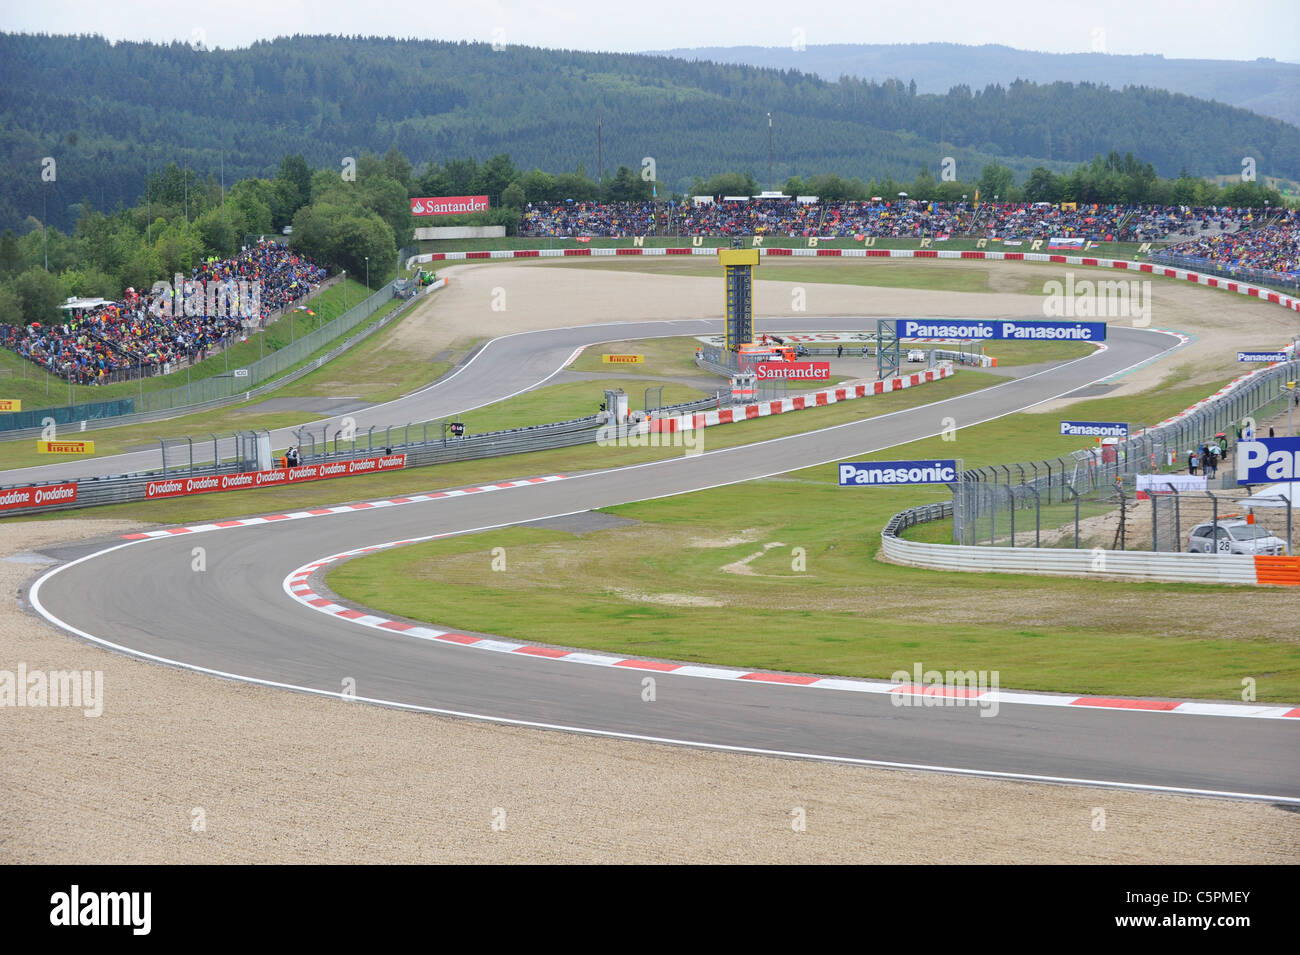 der Dunlop-Kurve am Nürburgring Rennstrecke während den deutschen Formel 1 Grand Prix 2011 Stockfoto